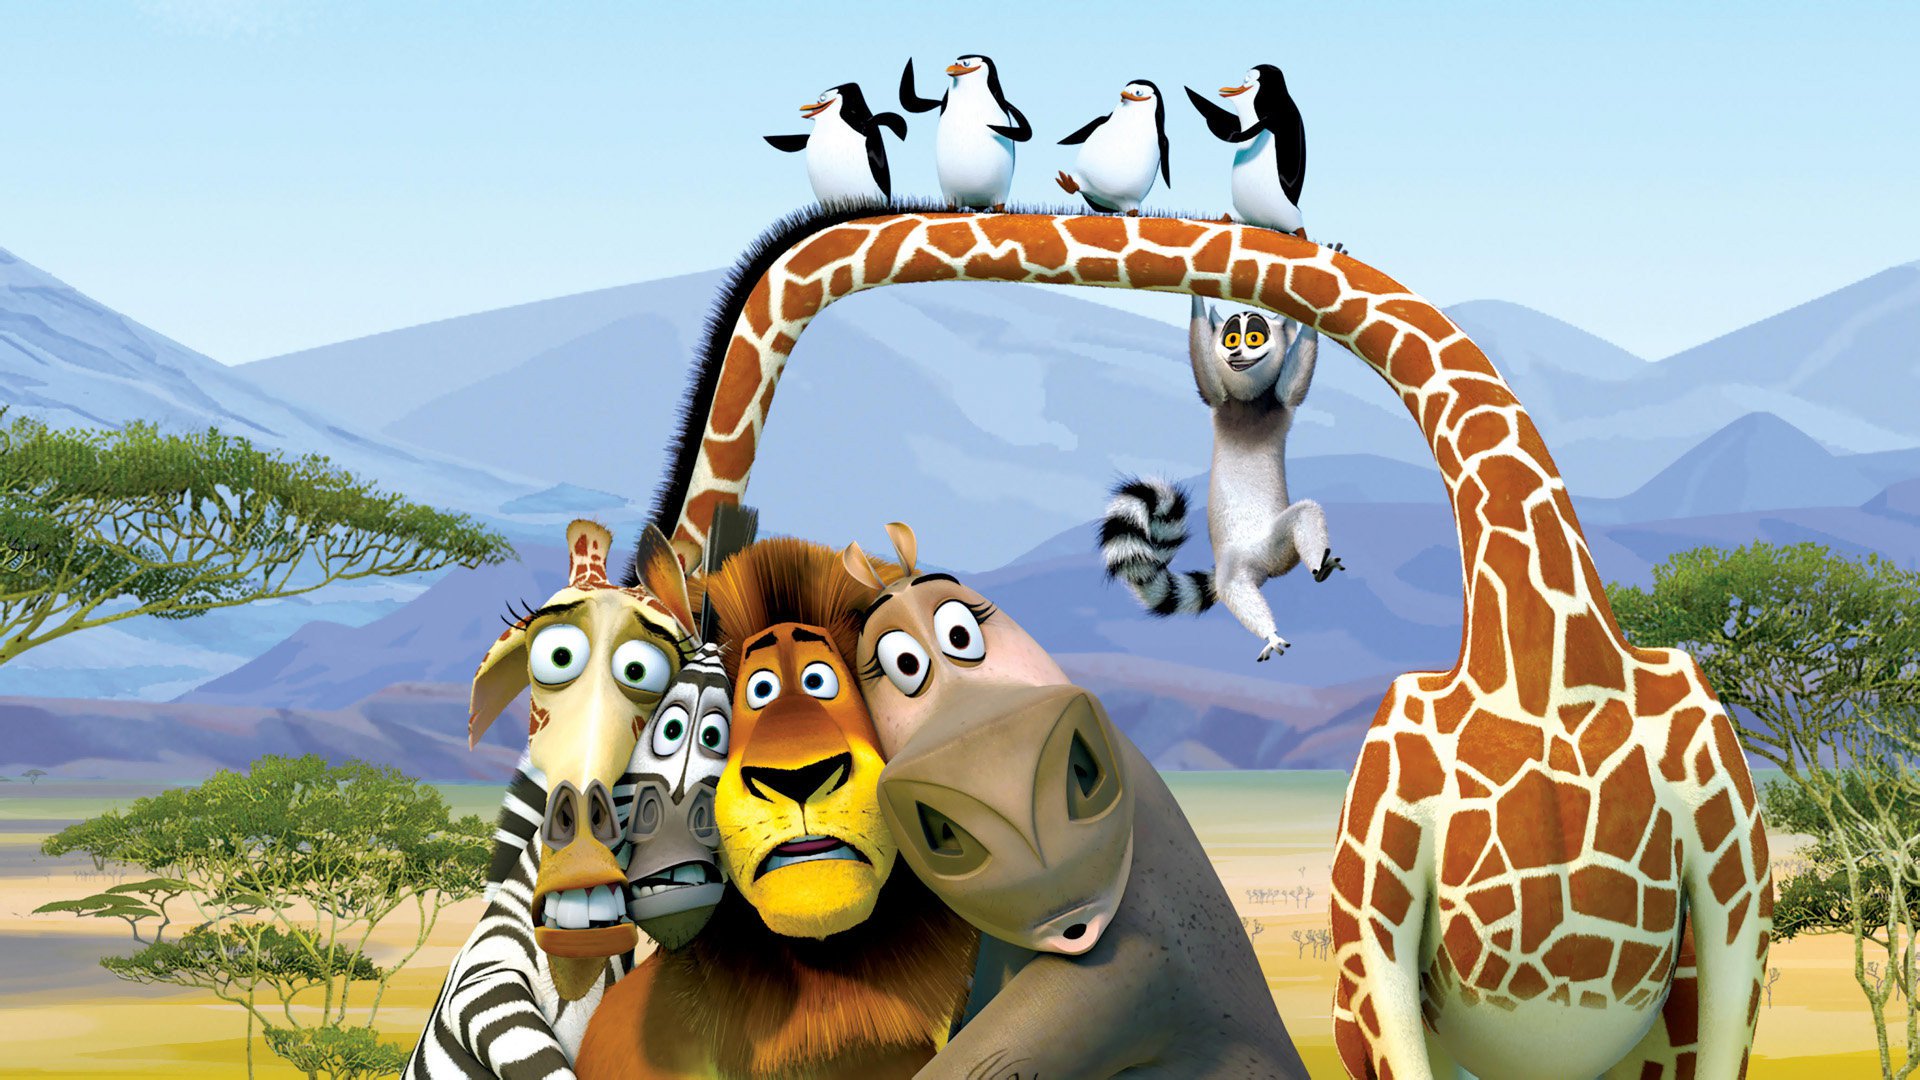 Кадр из мультфильма "Мадагаскар"